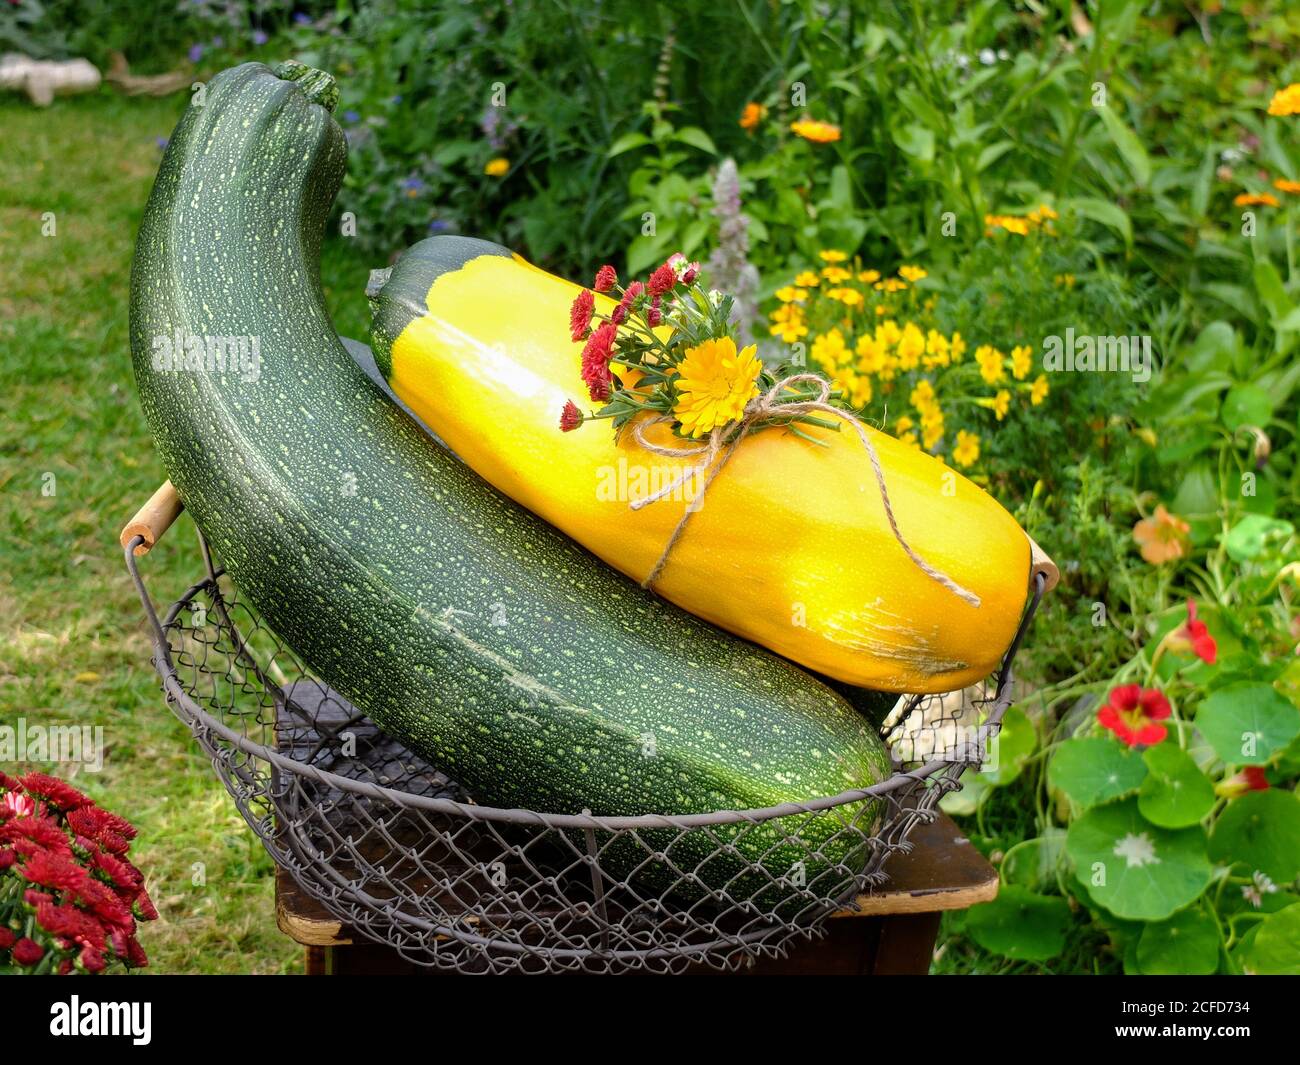 Zucchini Ernte in einem Korb - 'Defender' und 'Zephyr' Sorten Stockfoto